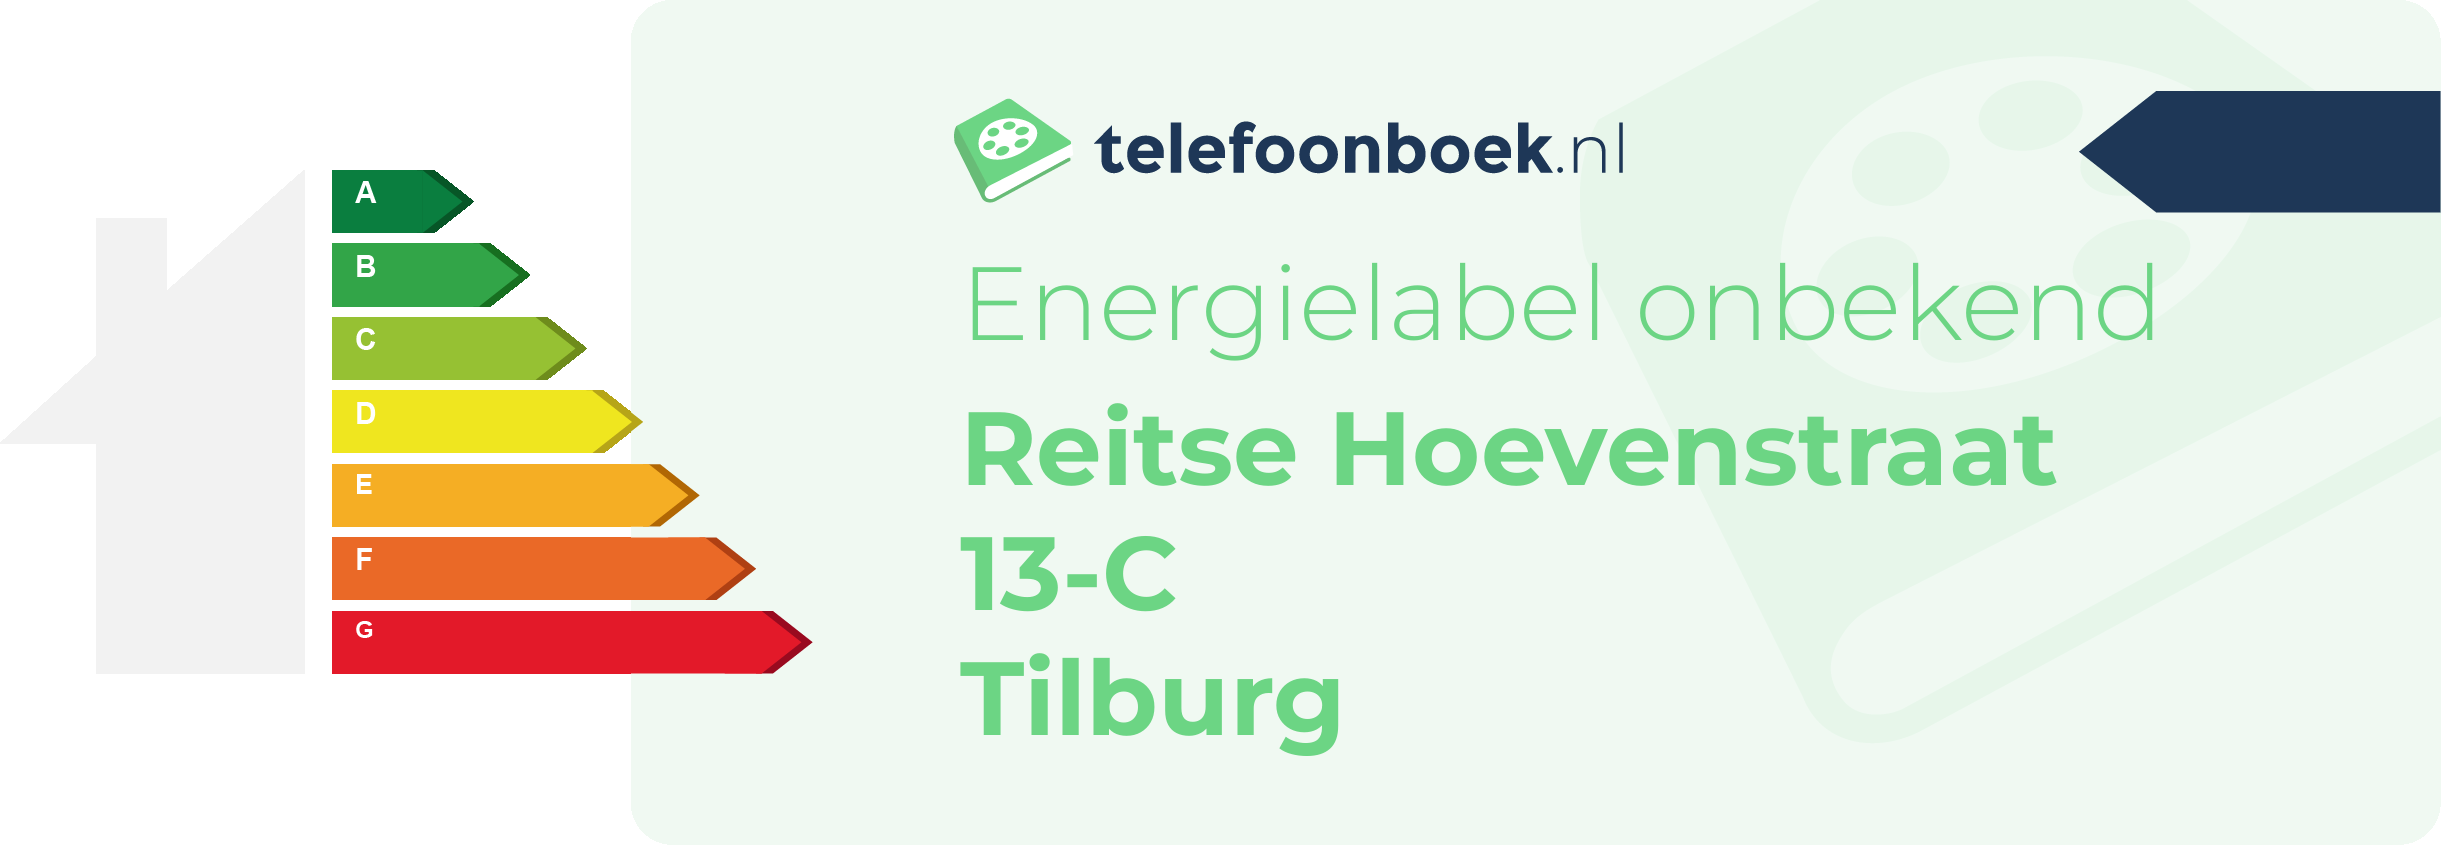 Energielabel Reitse Hoevenstraat 13-C Tilburg